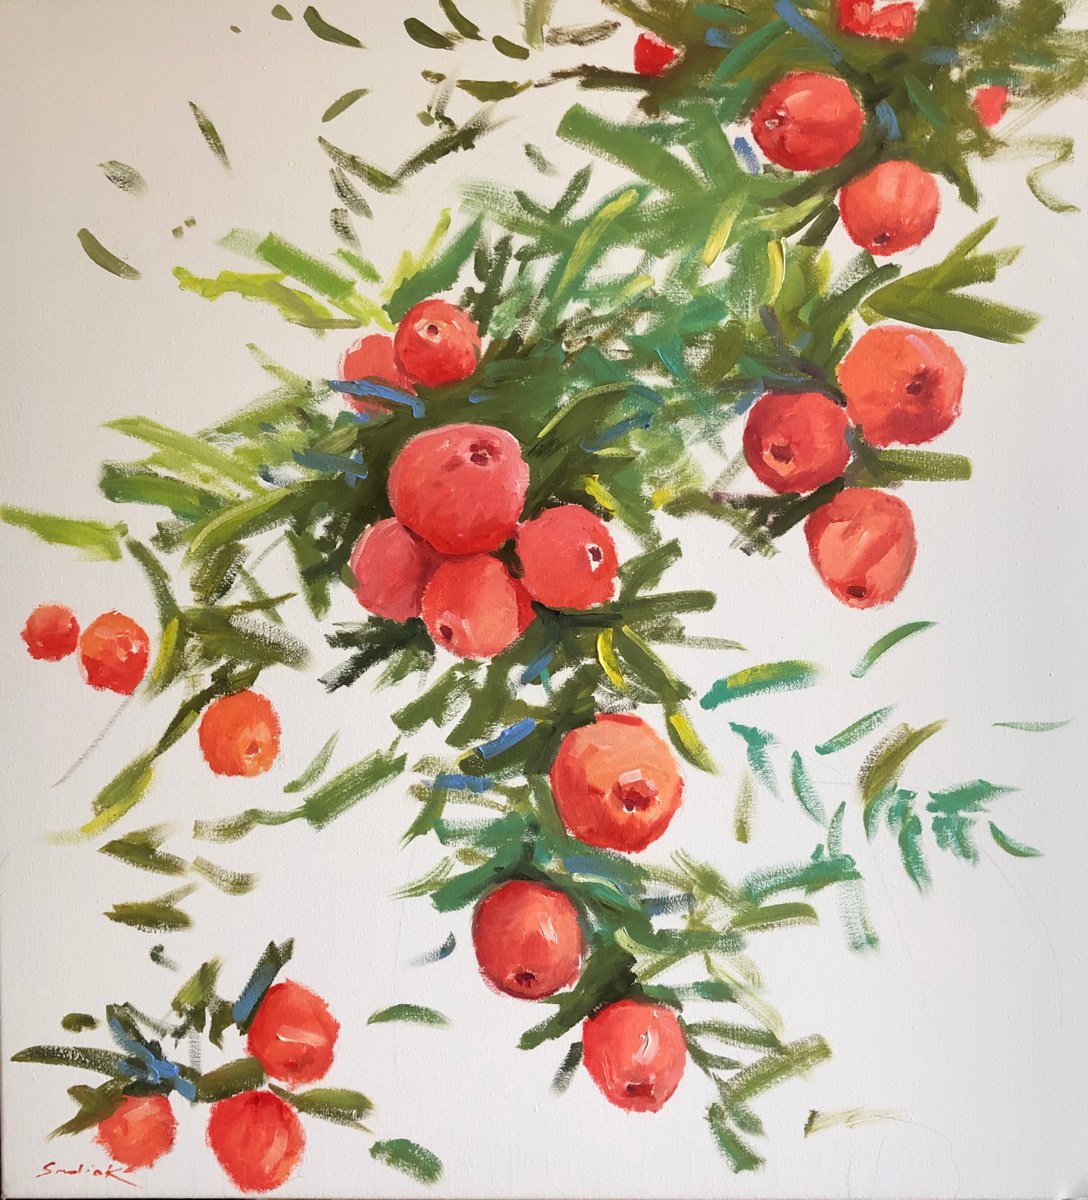 Red apples by Volodymyr Smoliak